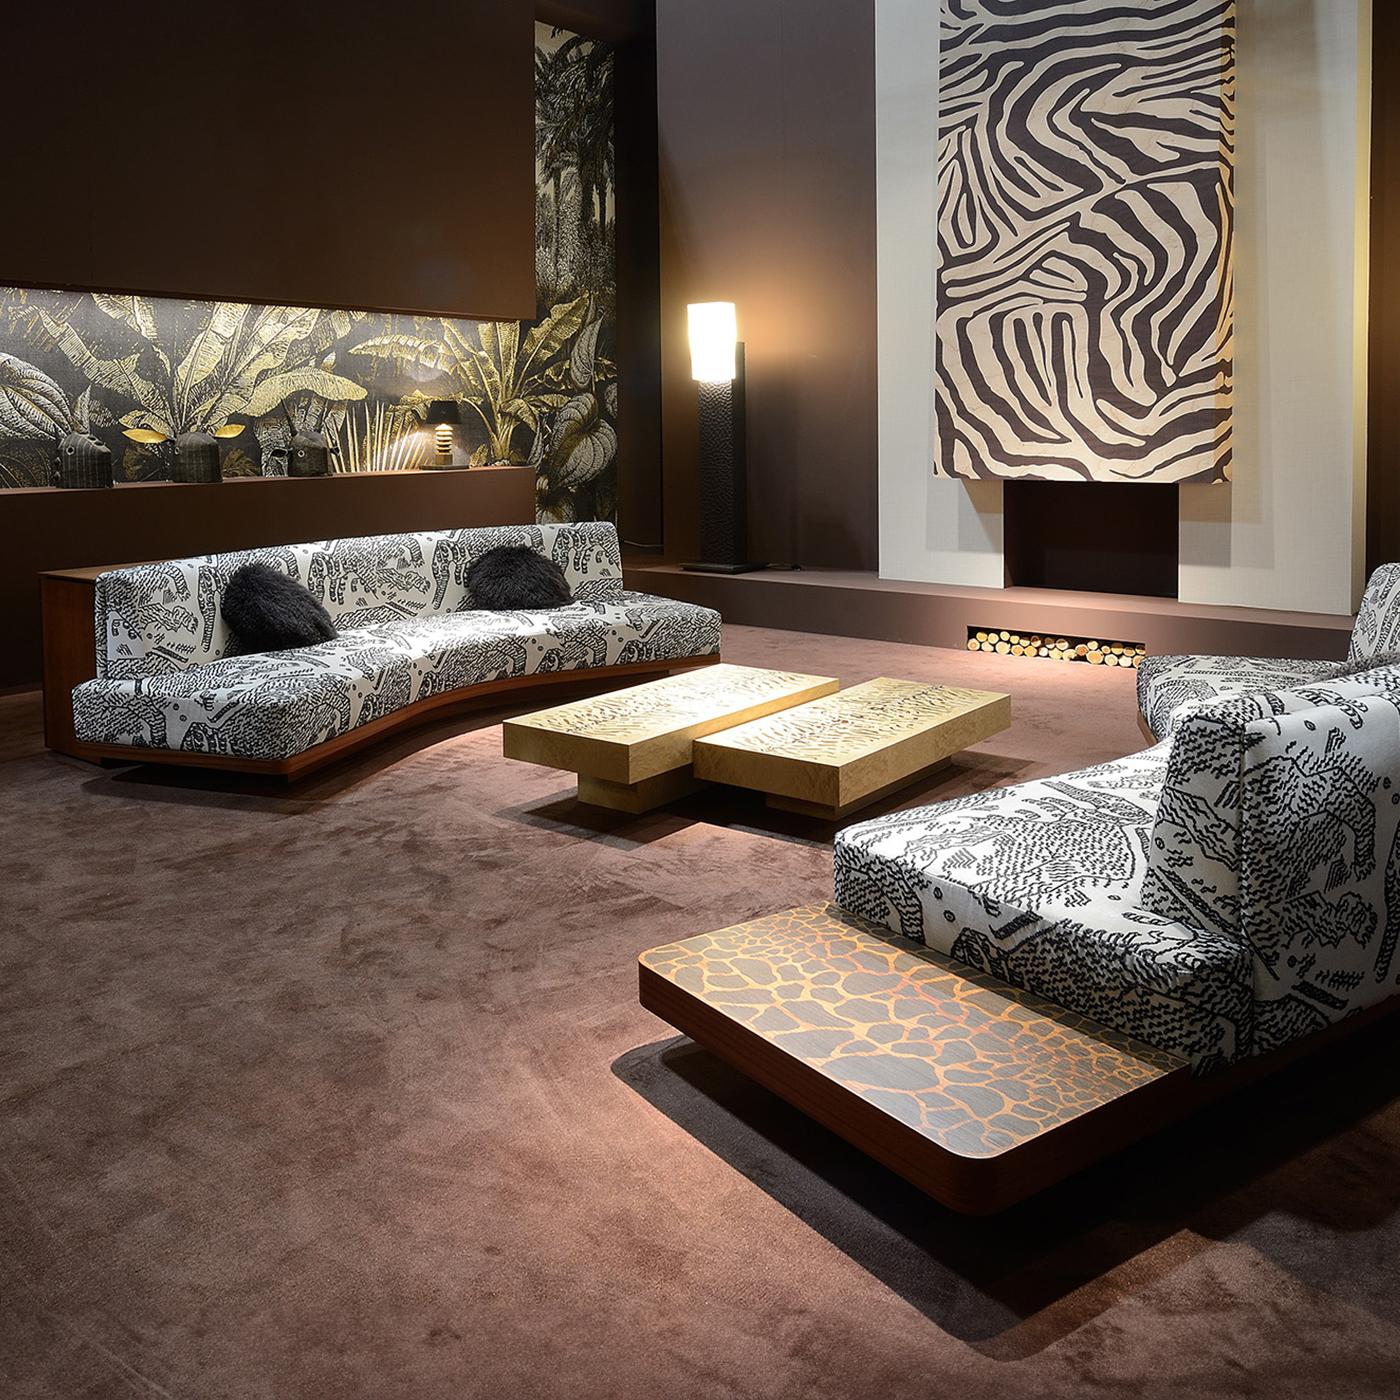 Ein elegantes und multifunktionales Design von zeitloser Raffinesse. Dieses Sofa zeichnet sich durch eine seitliche Tischplatte aus, die mit einer Intarsienarbeit aus Giraffenstreifen auf der Mahagonisperrholzstruktur verziert ist. Er ist mit einem